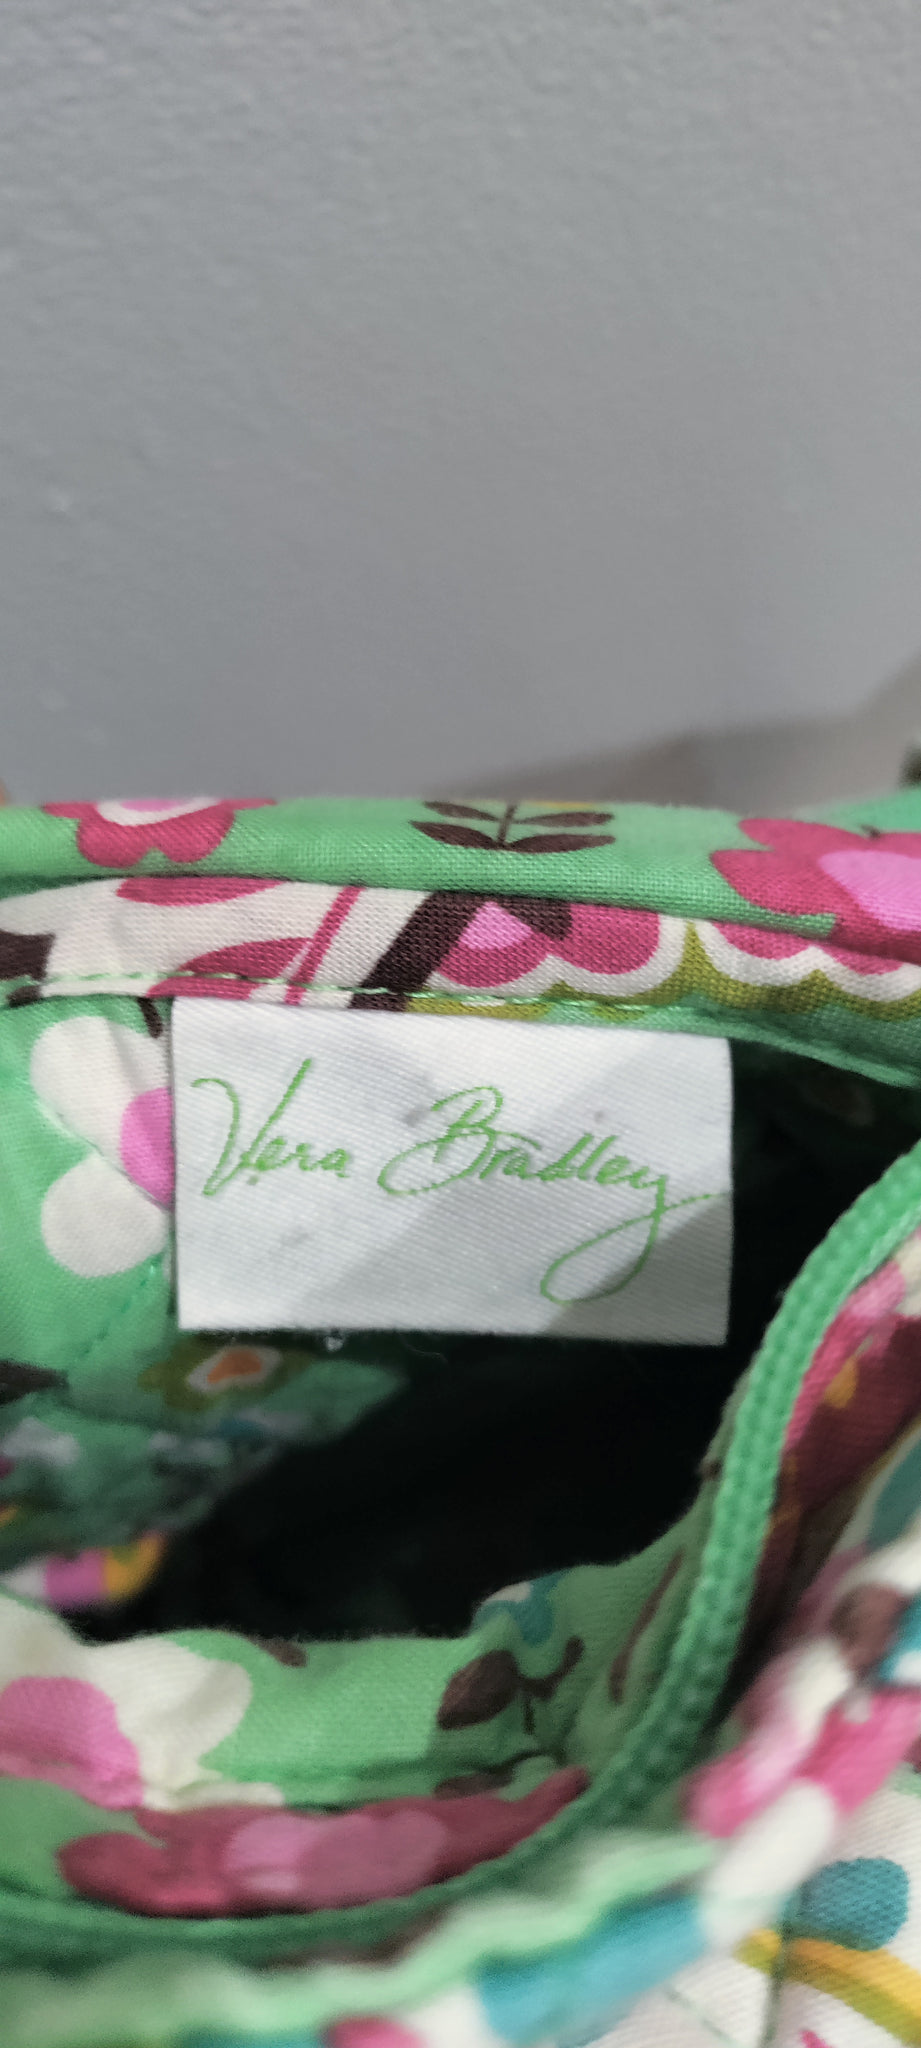 Vera Bradley tote handbag and wallet